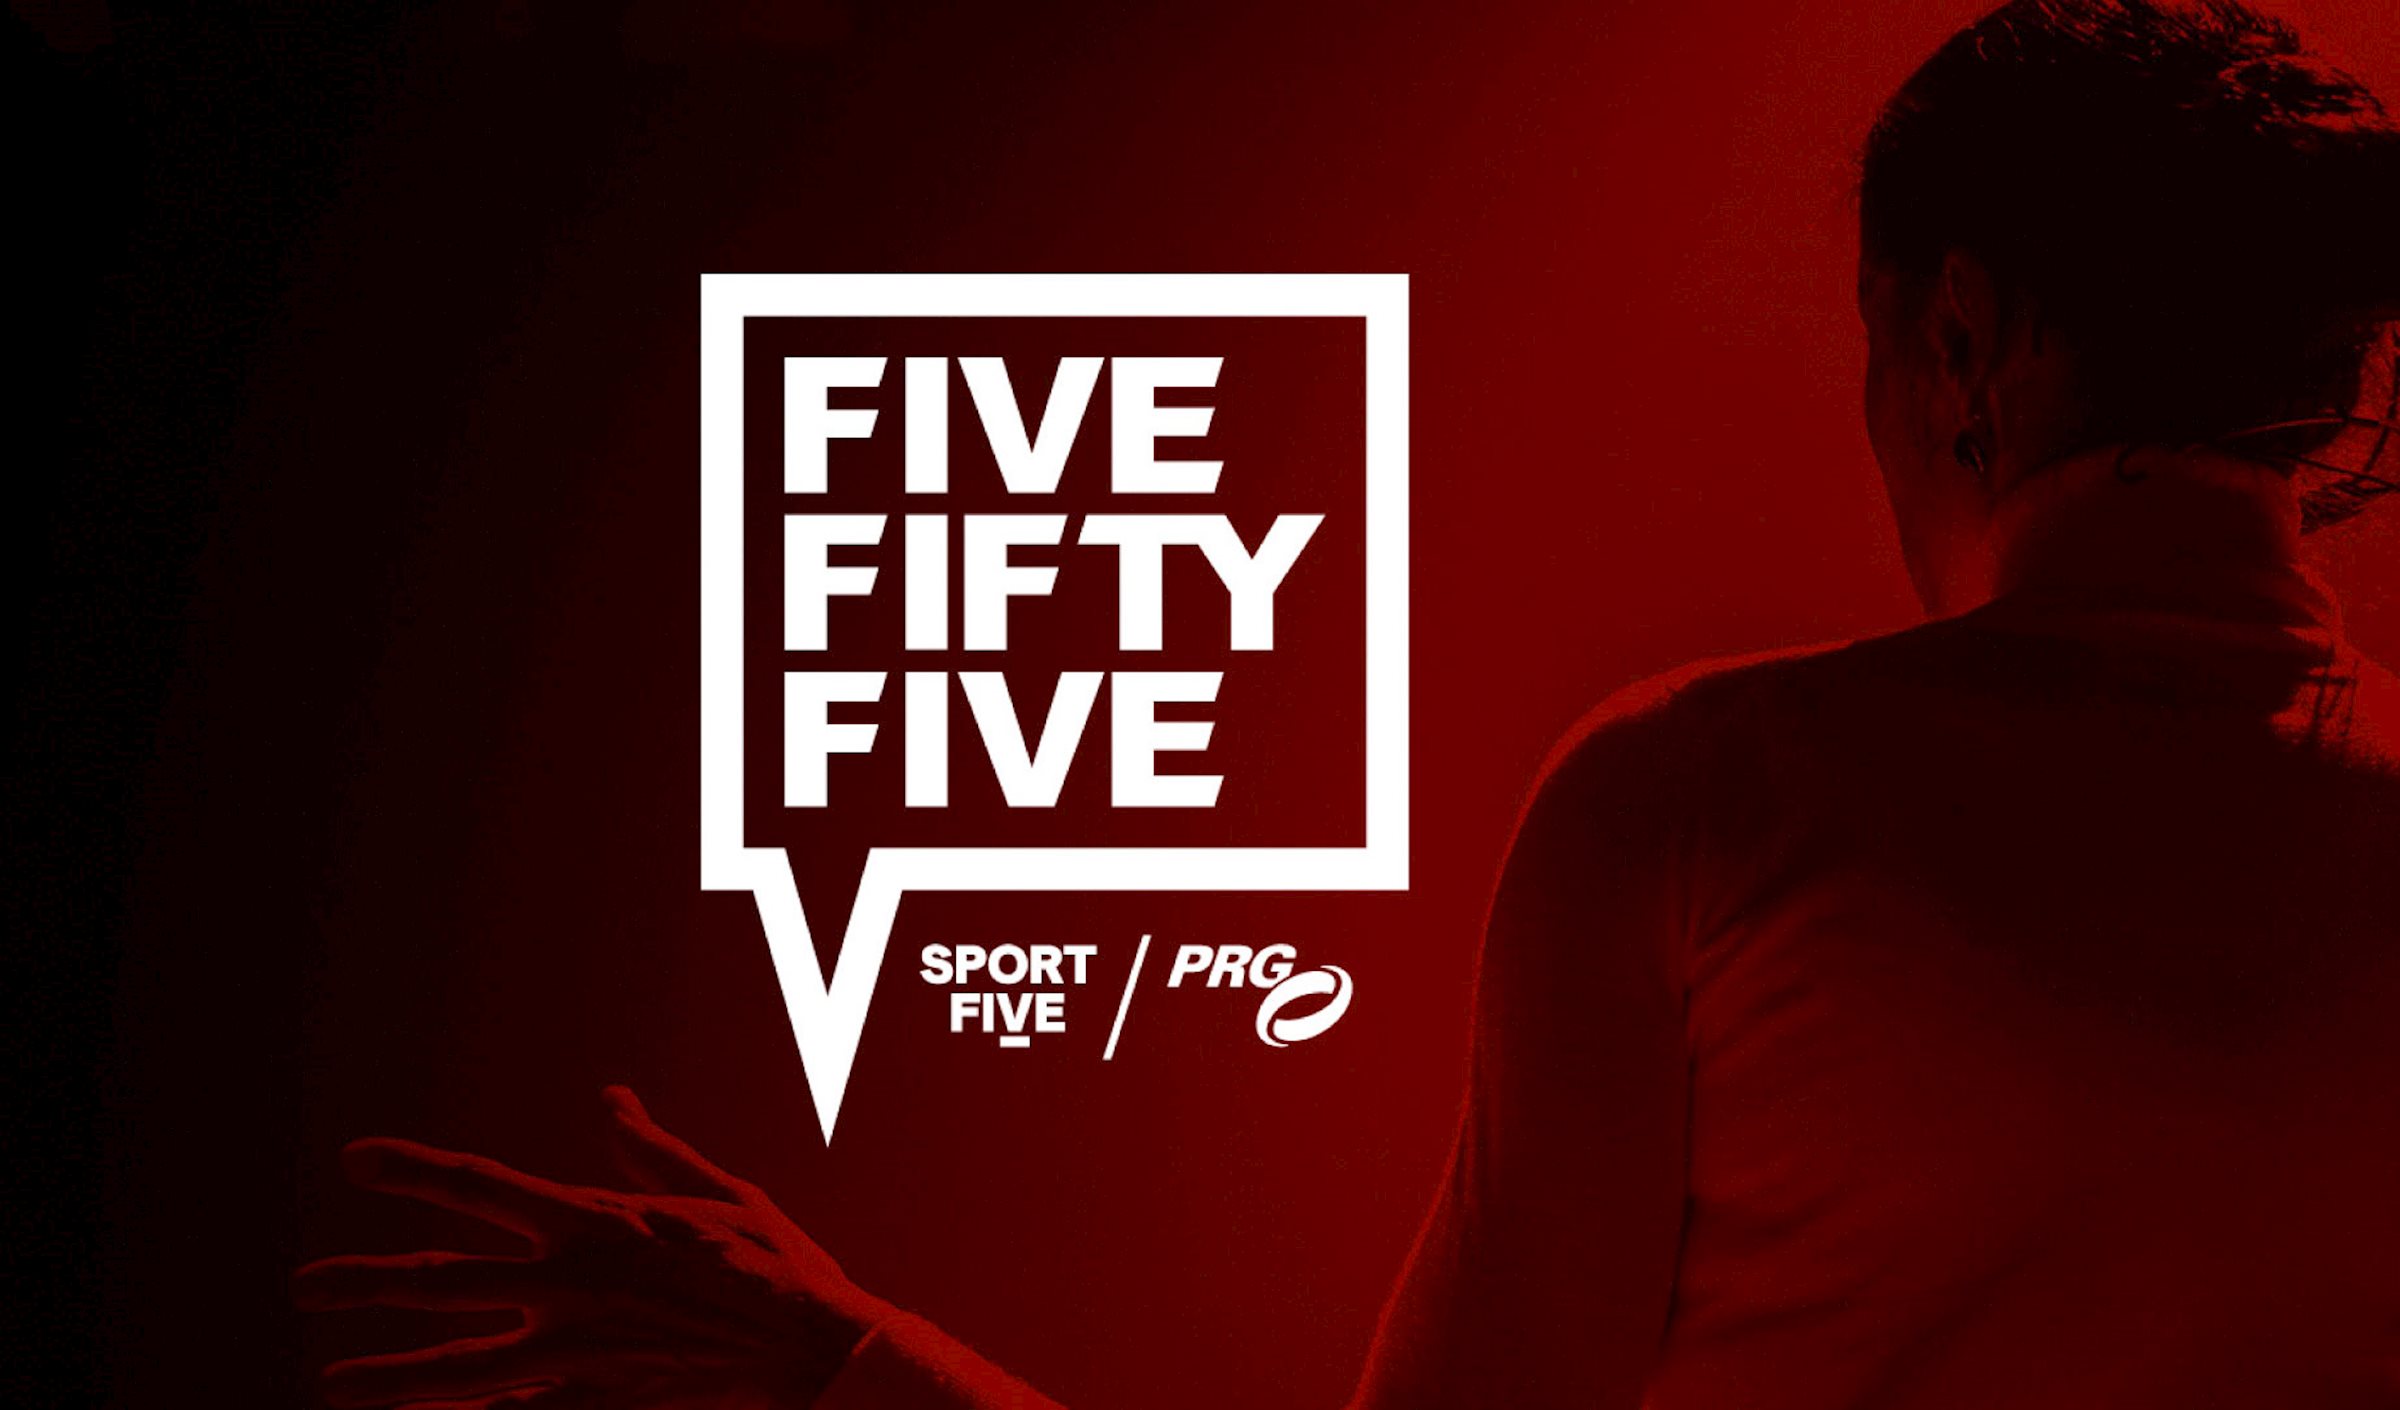 SPORTFIVE y Production Resource Group (PRG) anuncian hoy el lanzamiento de su formato conjunto de tertulia sobre negocios deportivos "FIVEFIFTYFIVE" [5:55].